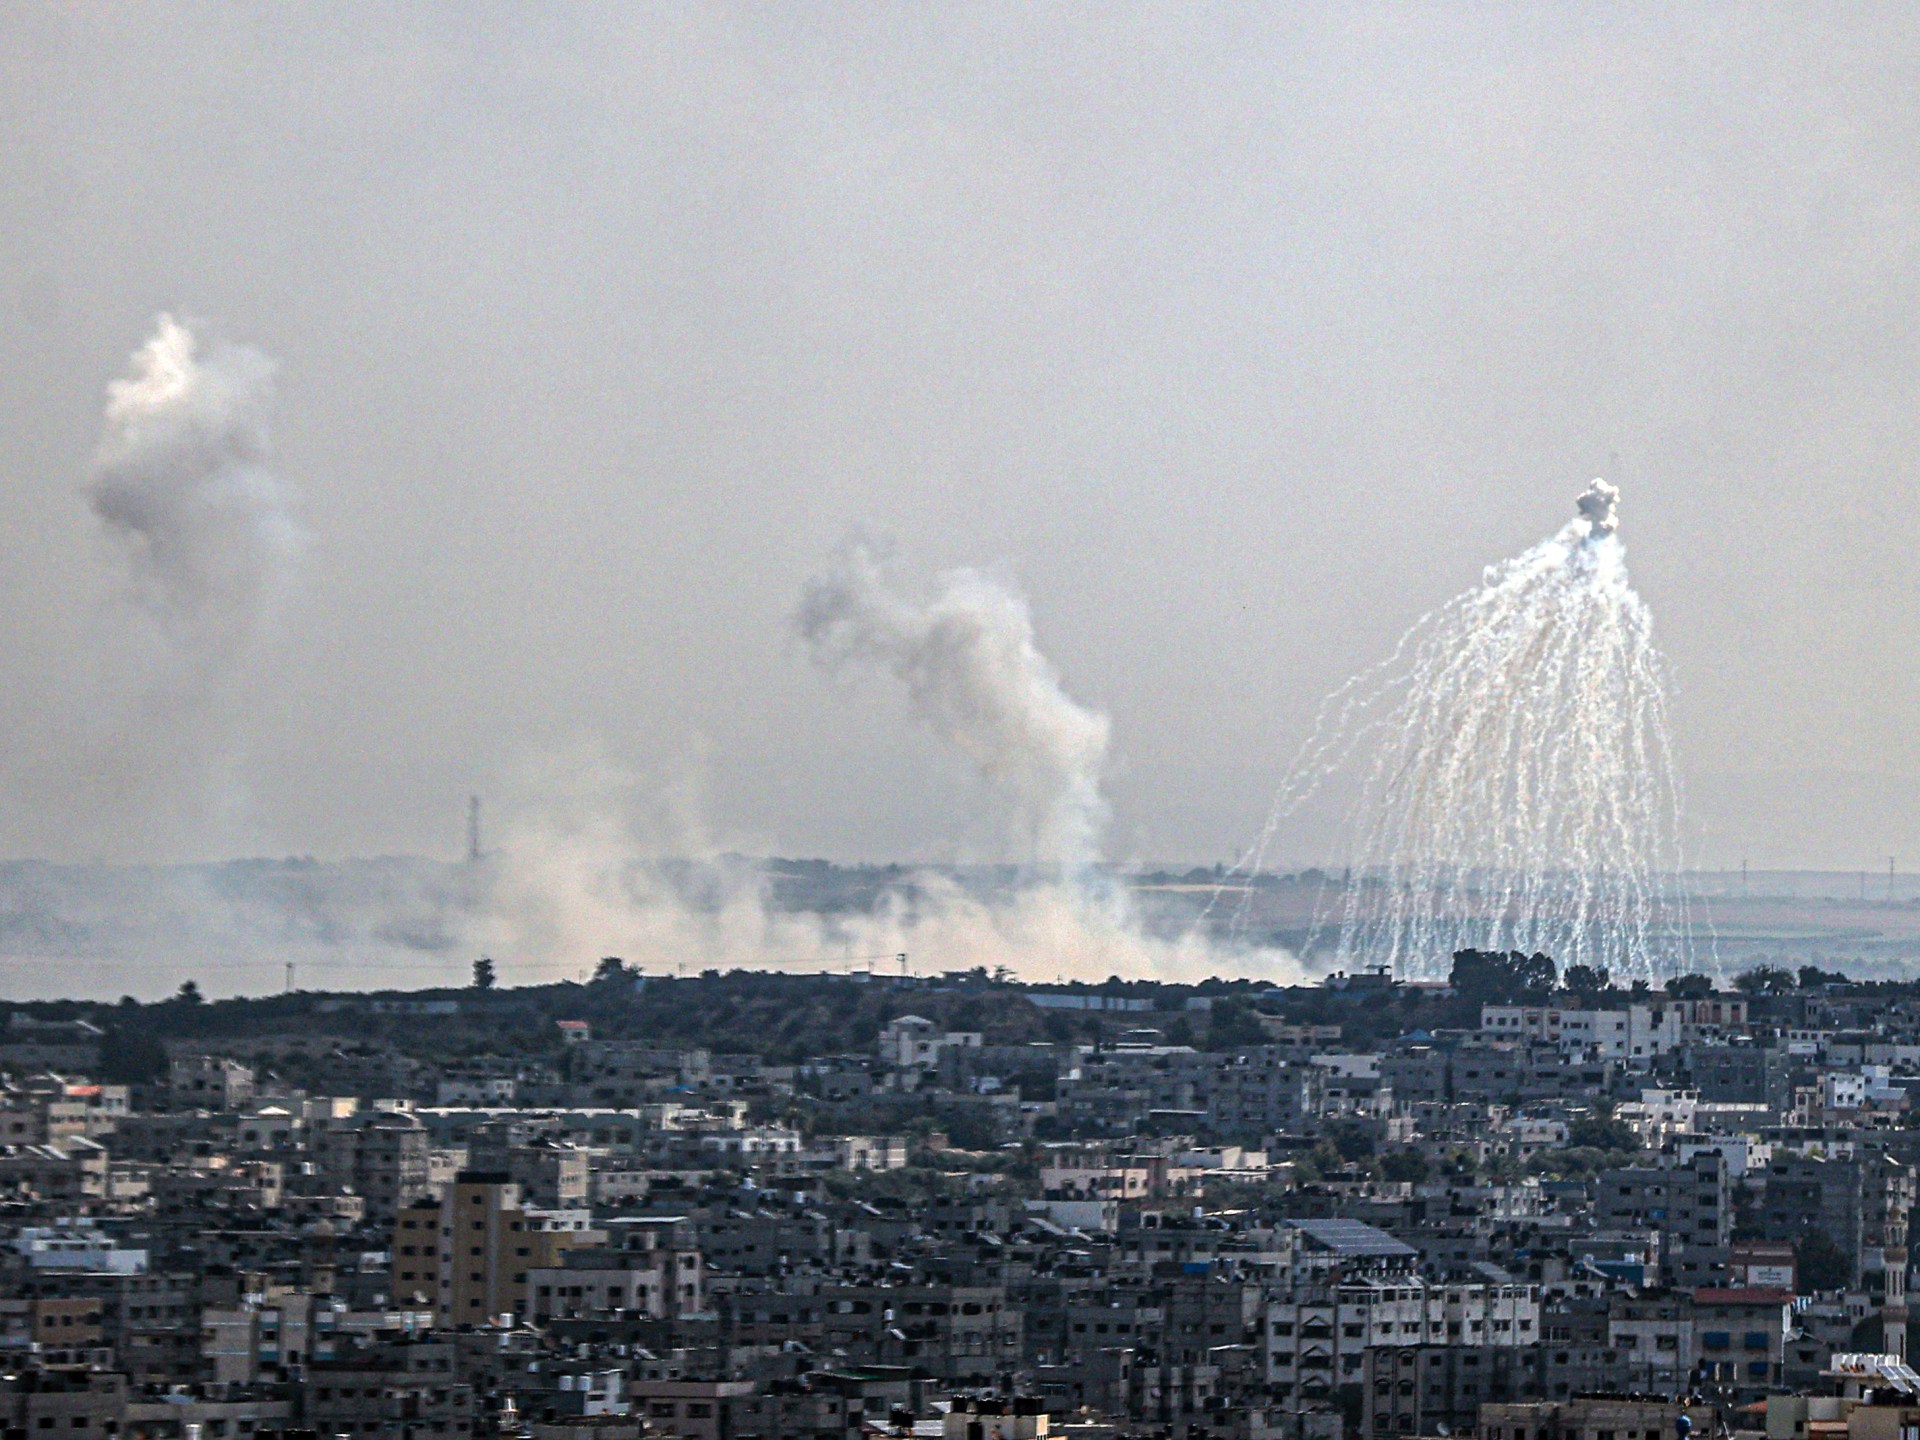 “العفو الدولية” تؤكد استخدام إسرائيل الفوسفور الأبيض في غزة | أخبار – البوكس نيوز